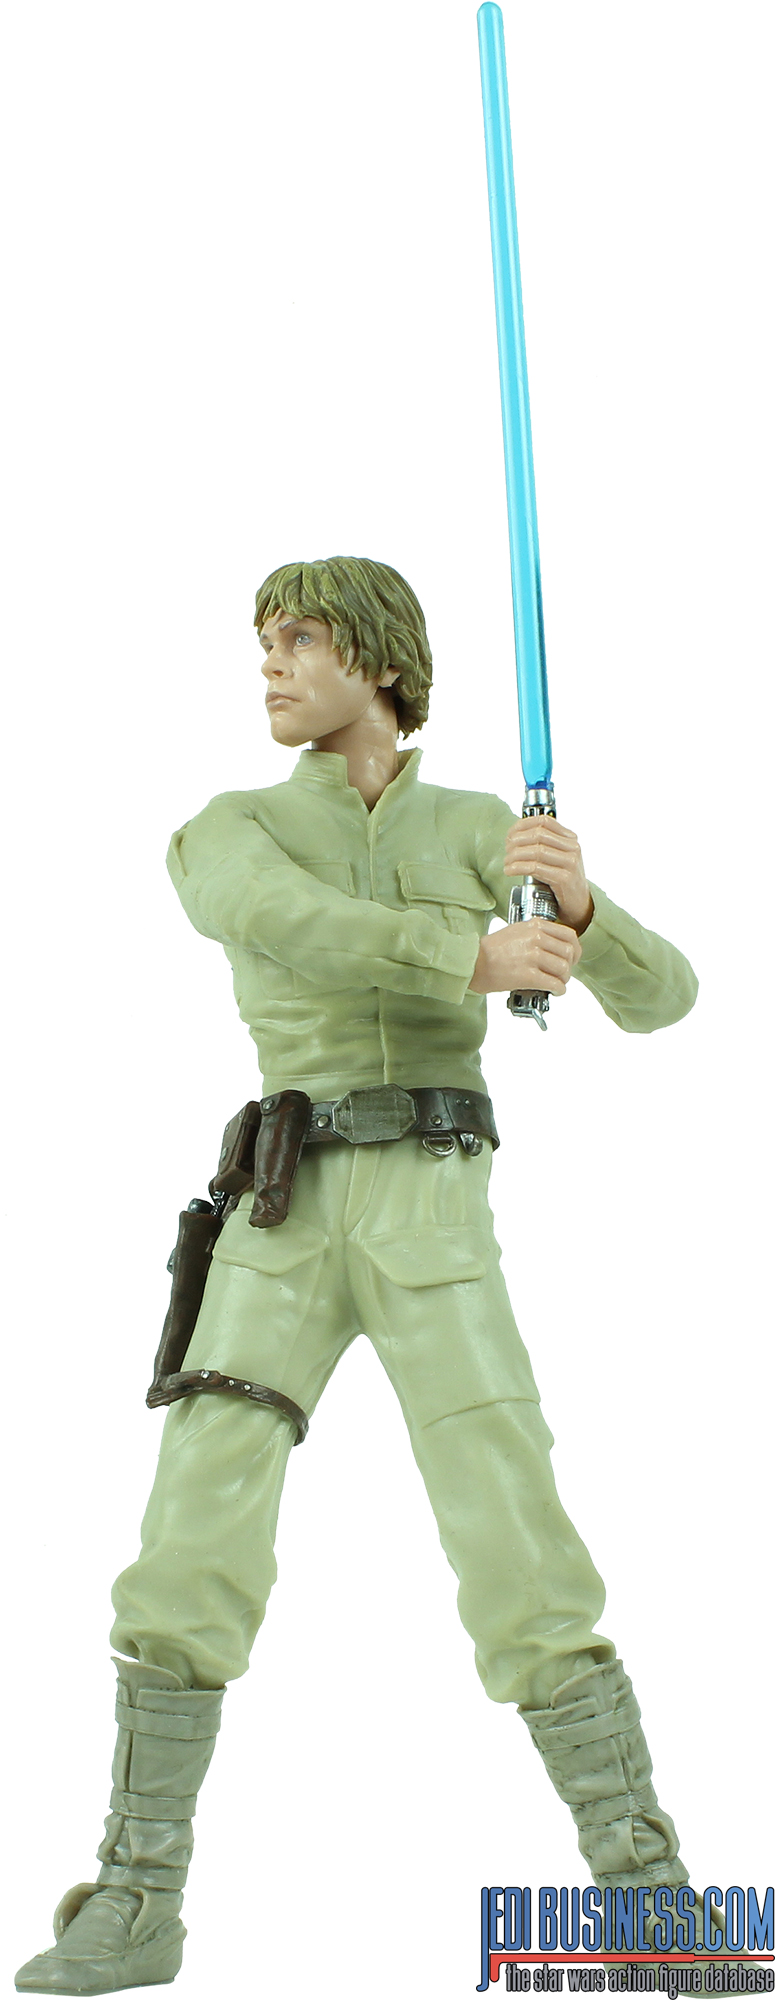 Hyperreal Luke Skywalker